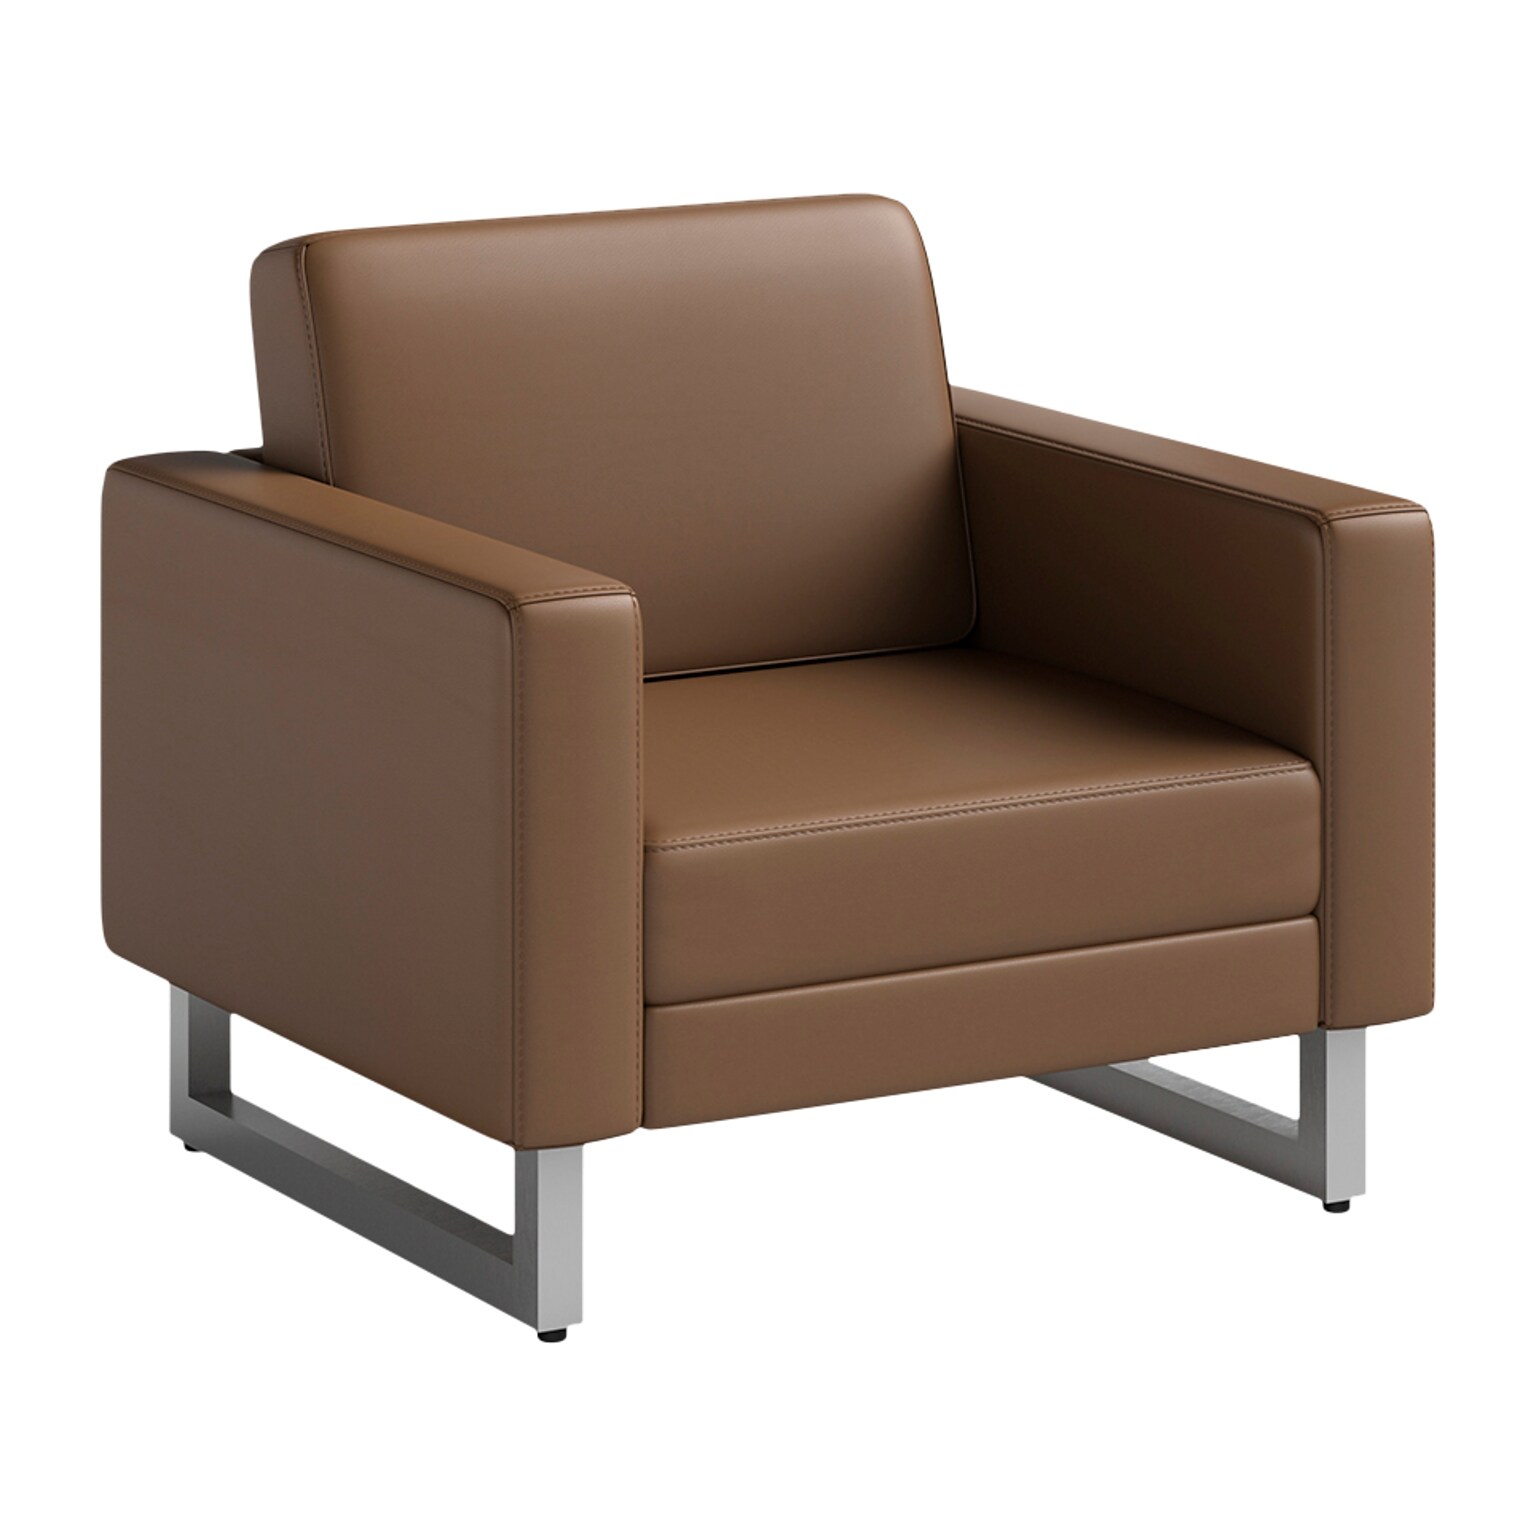 Safco Mirella Vinyl Lounge Chair, Cognac/Silver (1732MRL2SLVCOG)